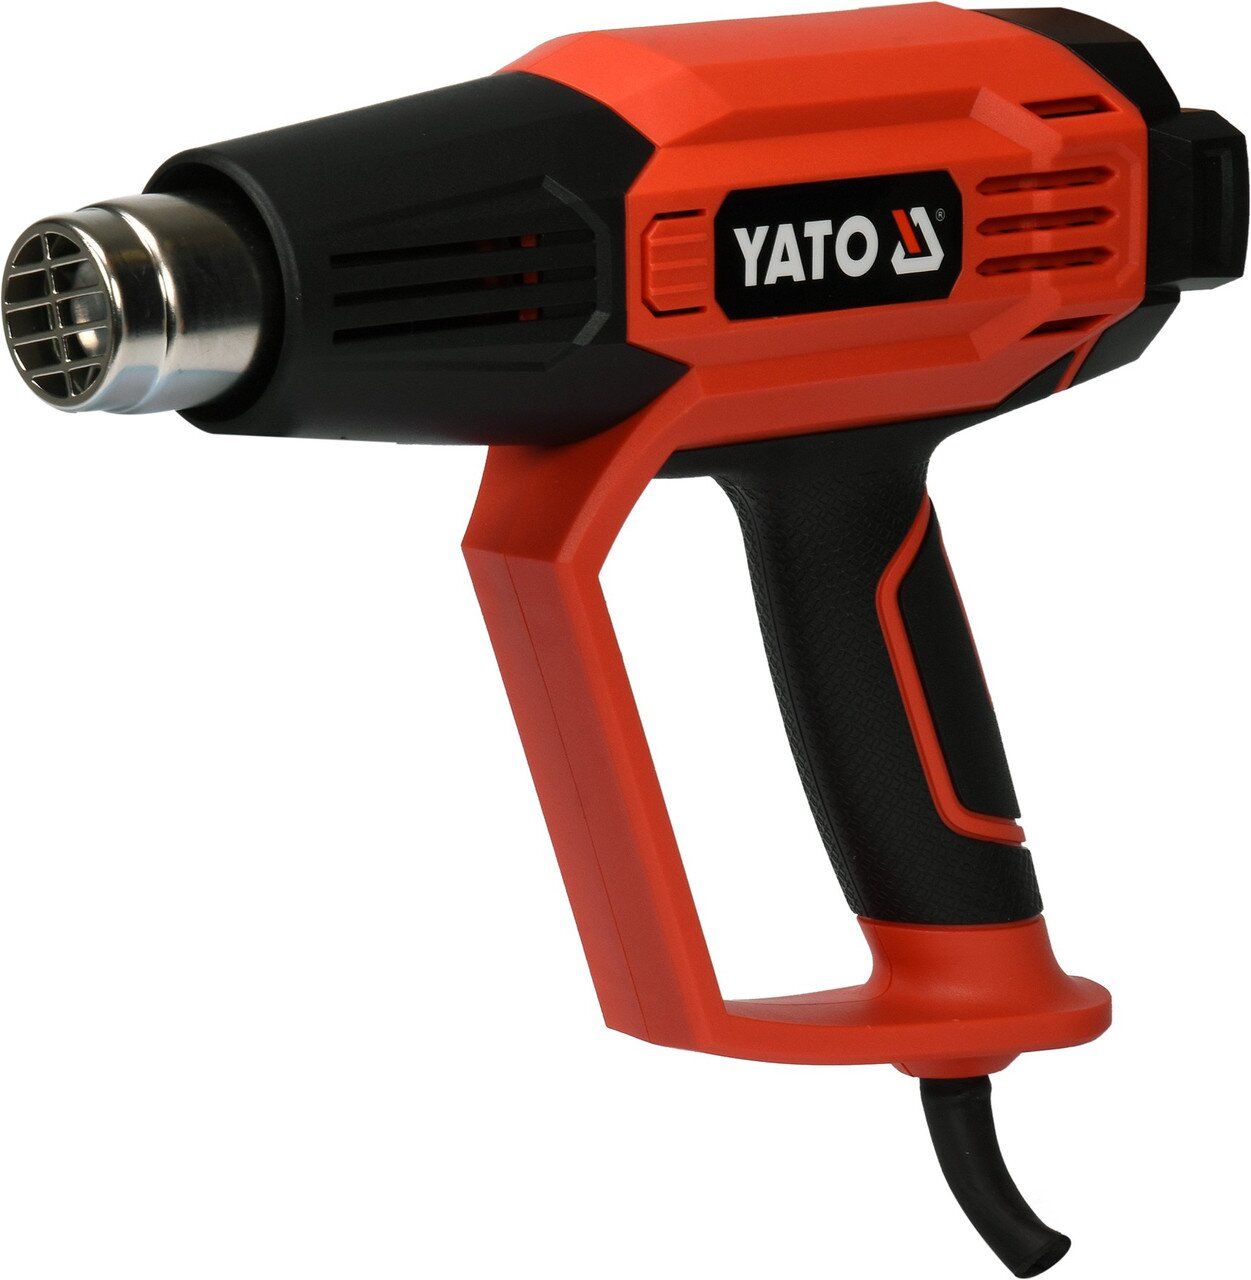 YATO Фен технічний мережевий YATO : 2 кВт, 50-600°C, 250-500 л/хв, 7 режимів температури + 5 насадки